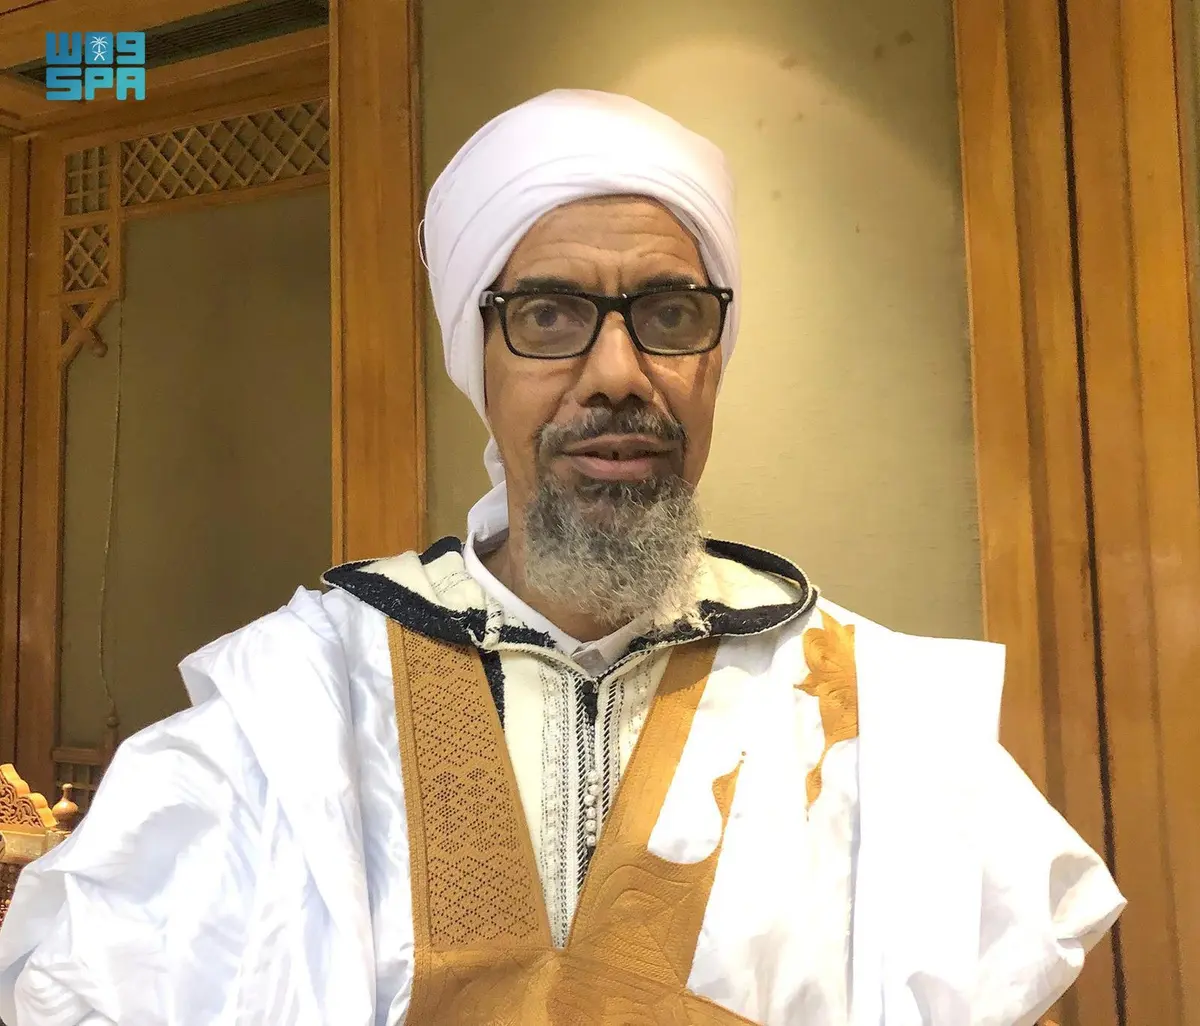 مفتي موريتانيا: جهود قيادة المملكة في خدمة الإسلام والمسلمين ملء الأسماع والأبصار